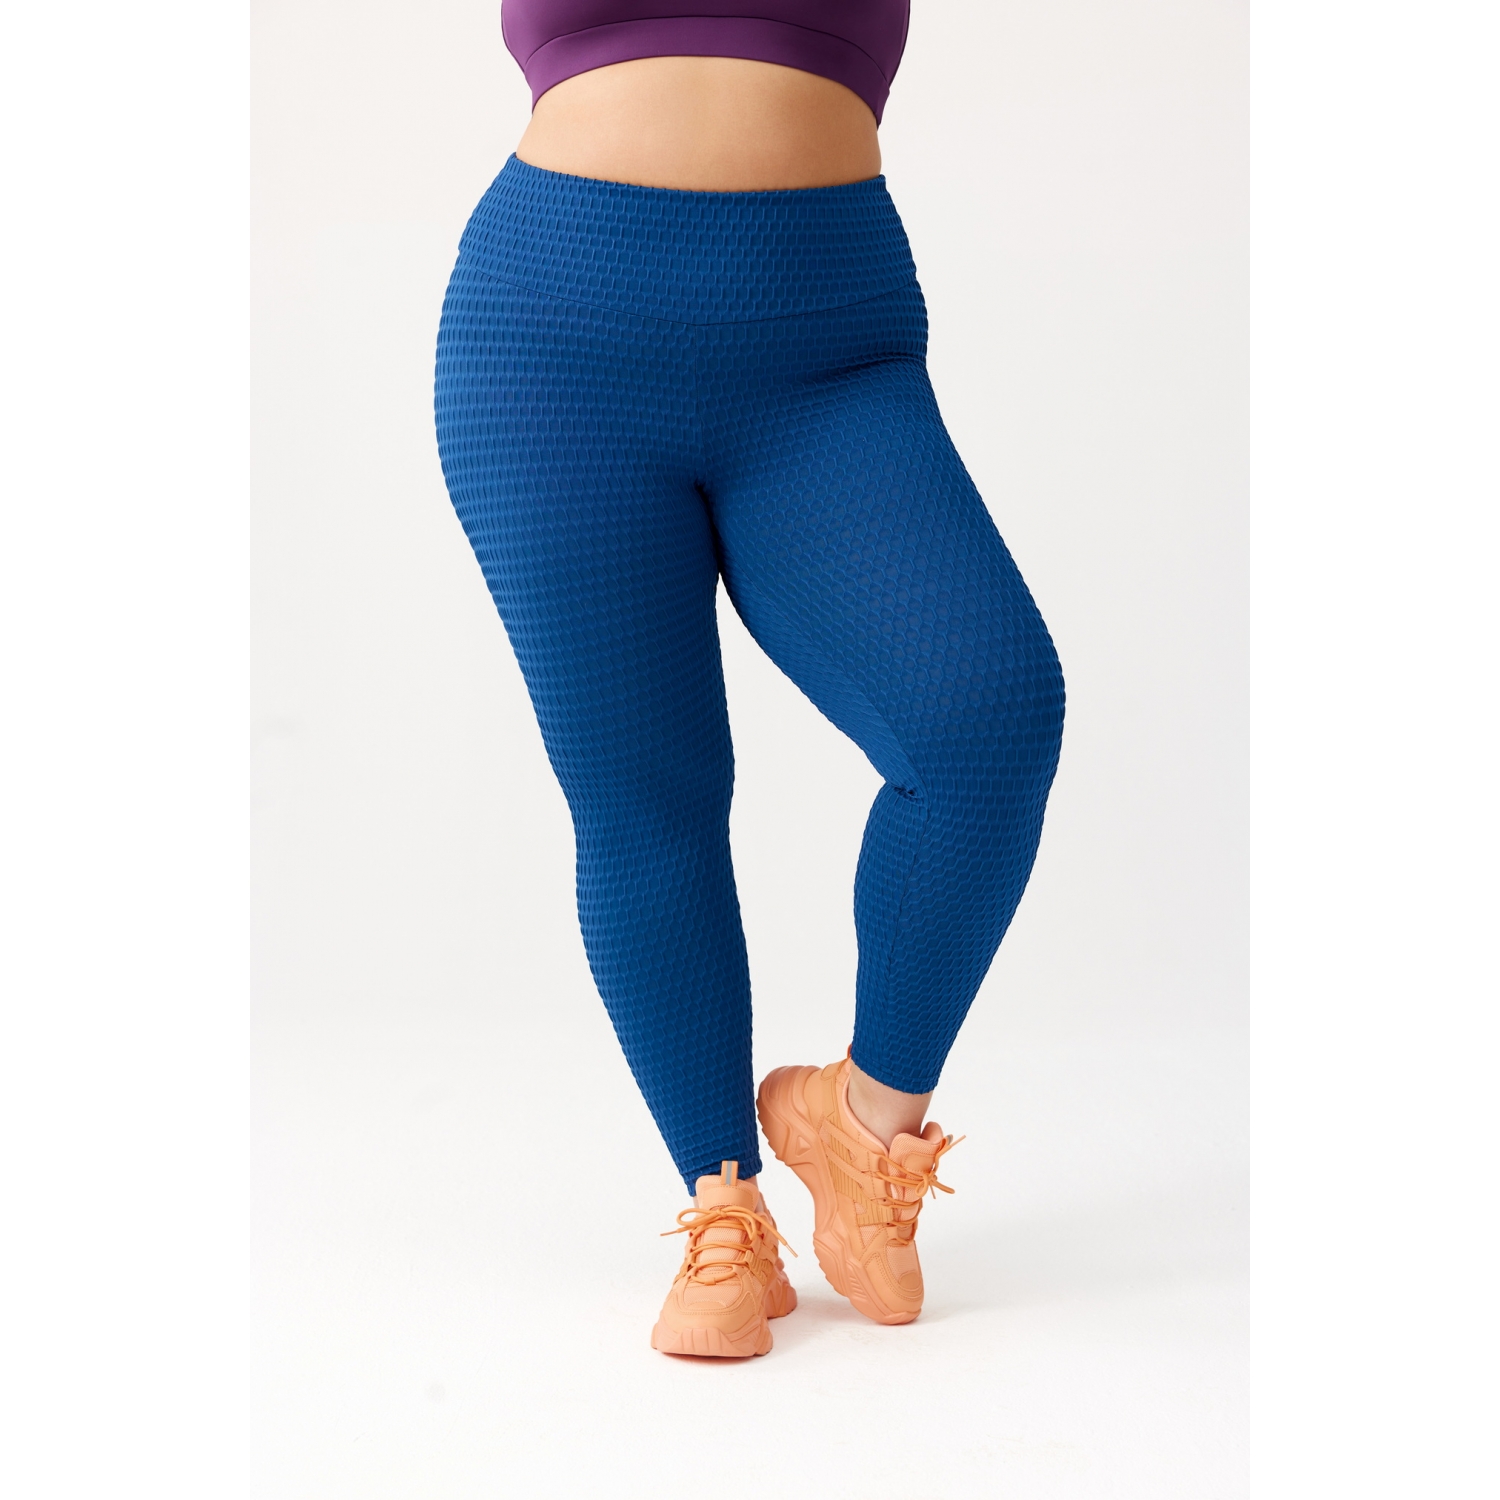 https://roughradical.com.pl/9415-full_product/women-s-anti-cellulite-leggings-impulse-plus-size.jpg